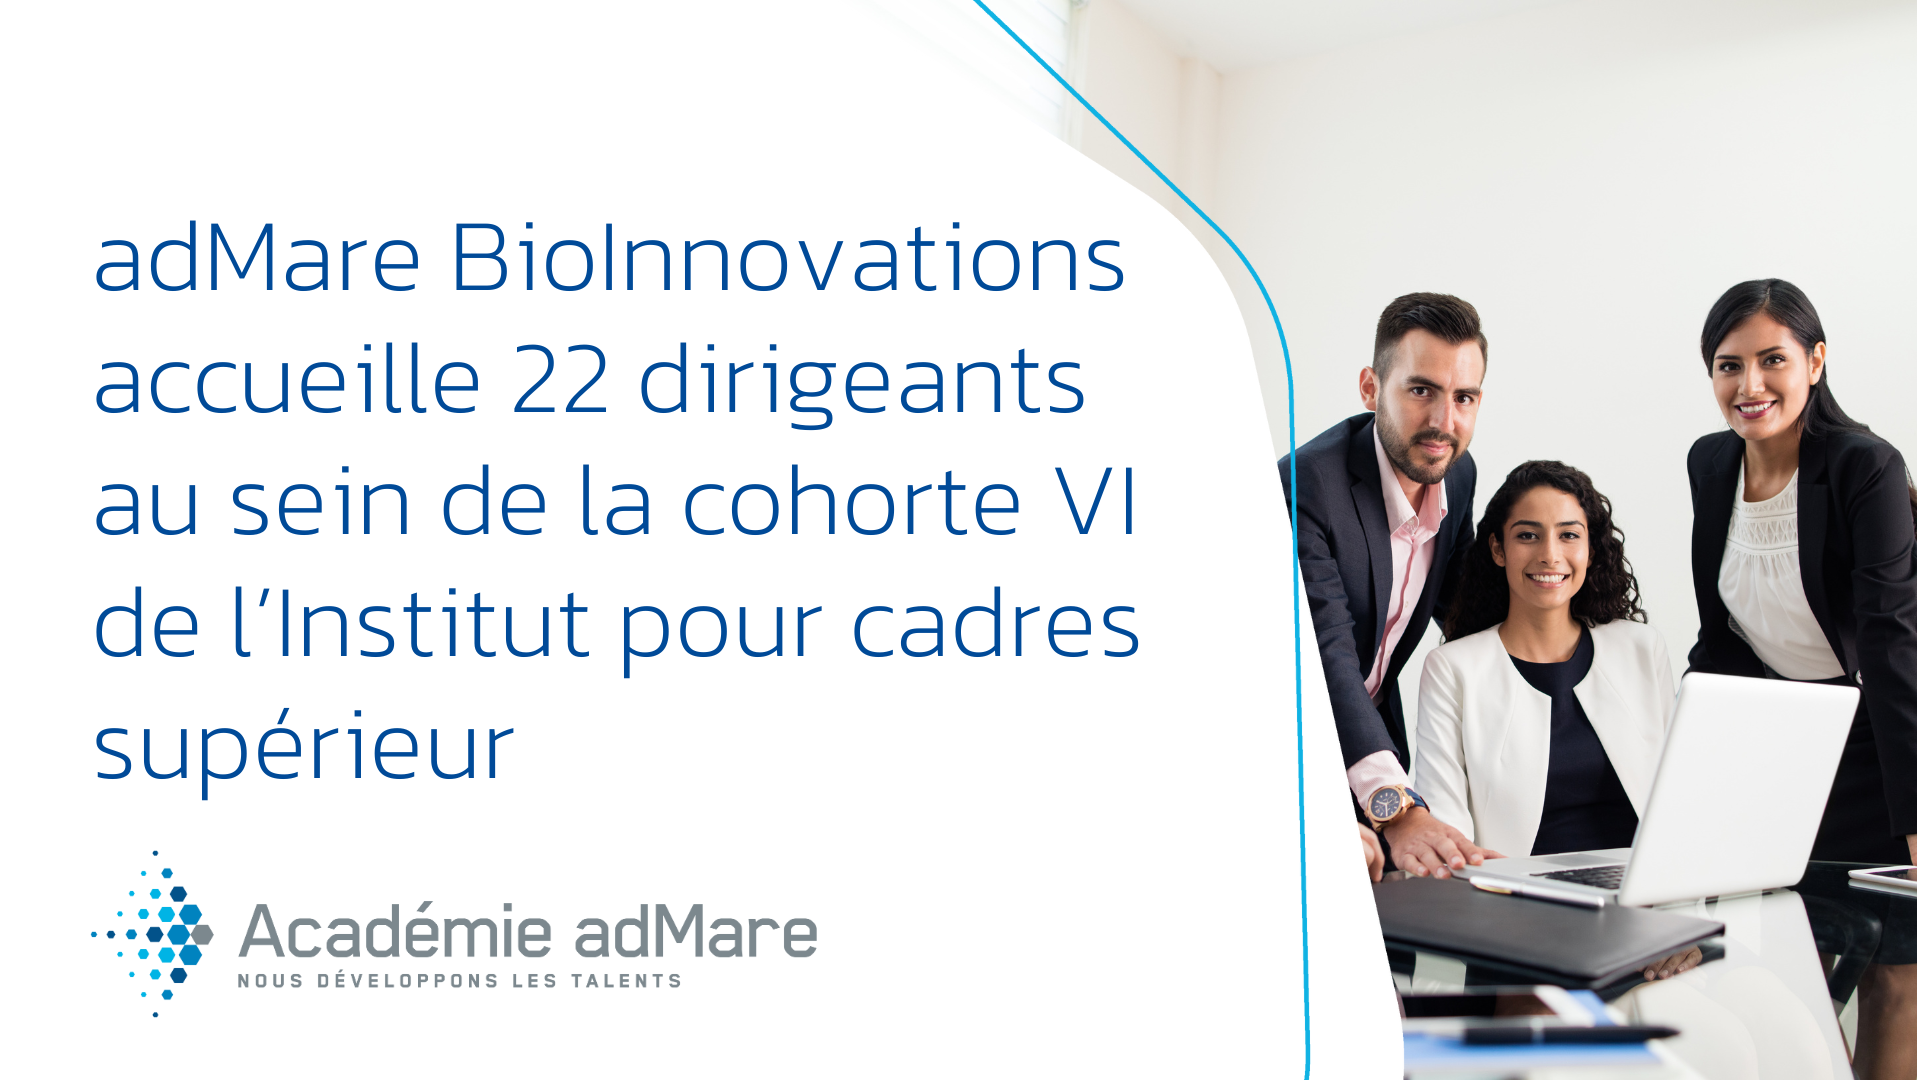 adMare BioInnovations accueille 22 dirigeants influents du secteur des sciences de la vie au sein de la cohorte VI de l’Institut pour cadres supérieurs de l’Académie adMare